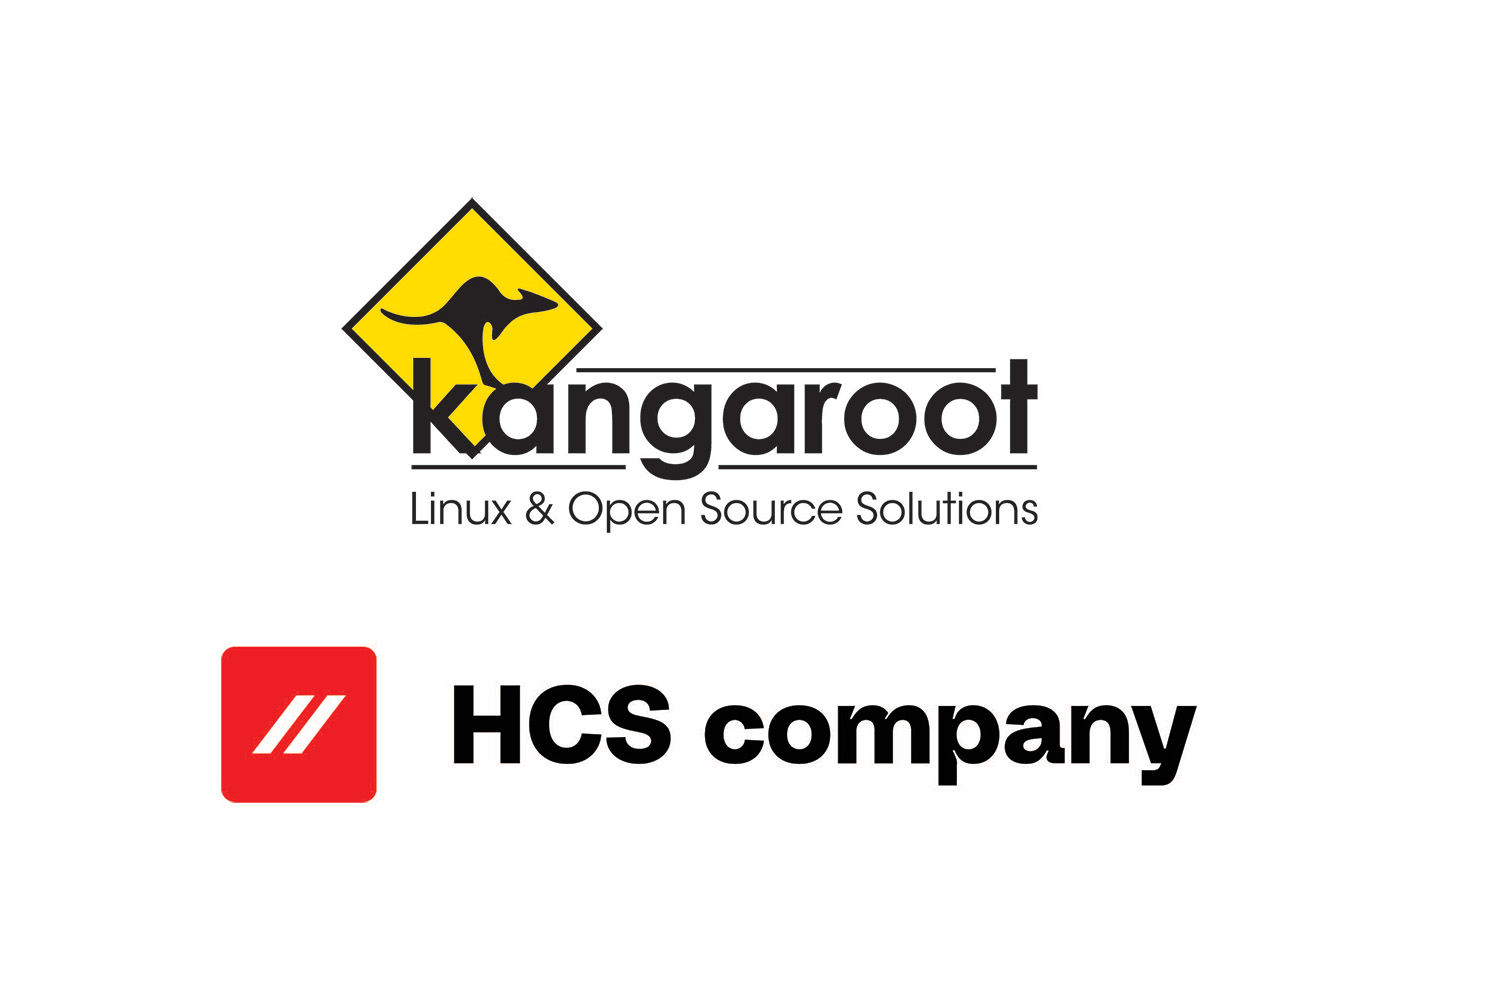 HCS - Kangaroot